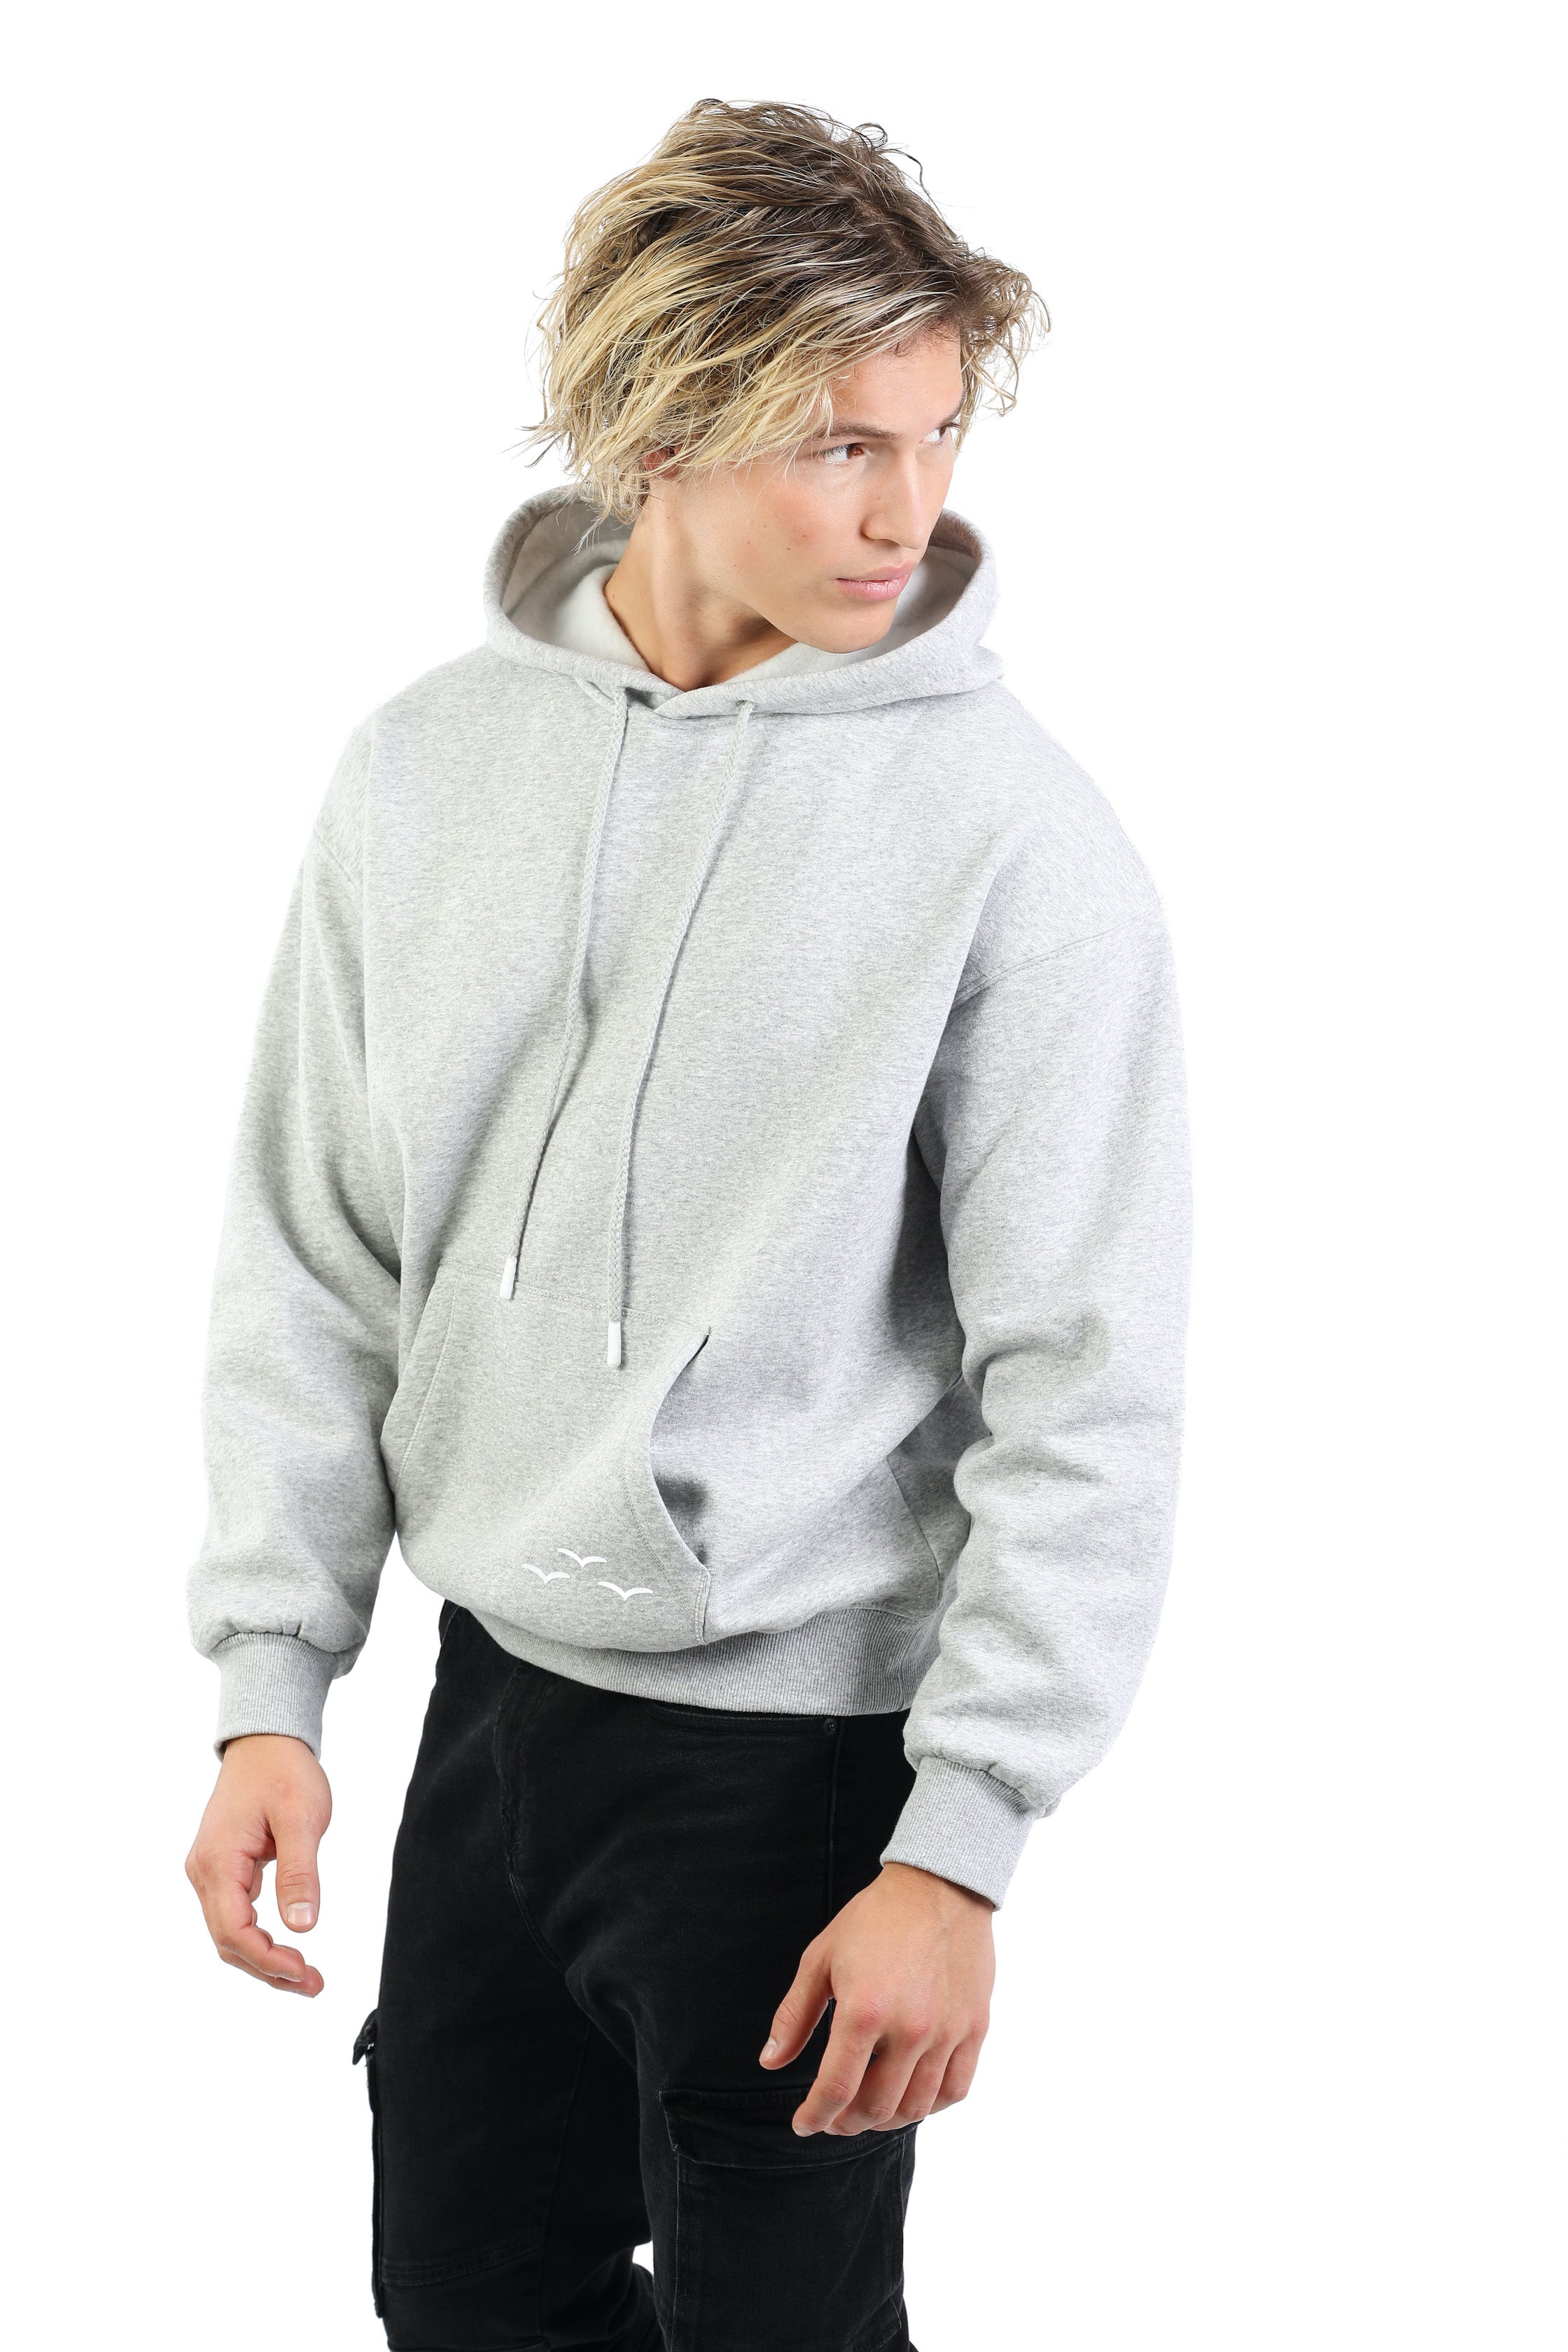 Men's Premium Fleece Relaxed Sweatsuit Set in Vintage Pearl Grey